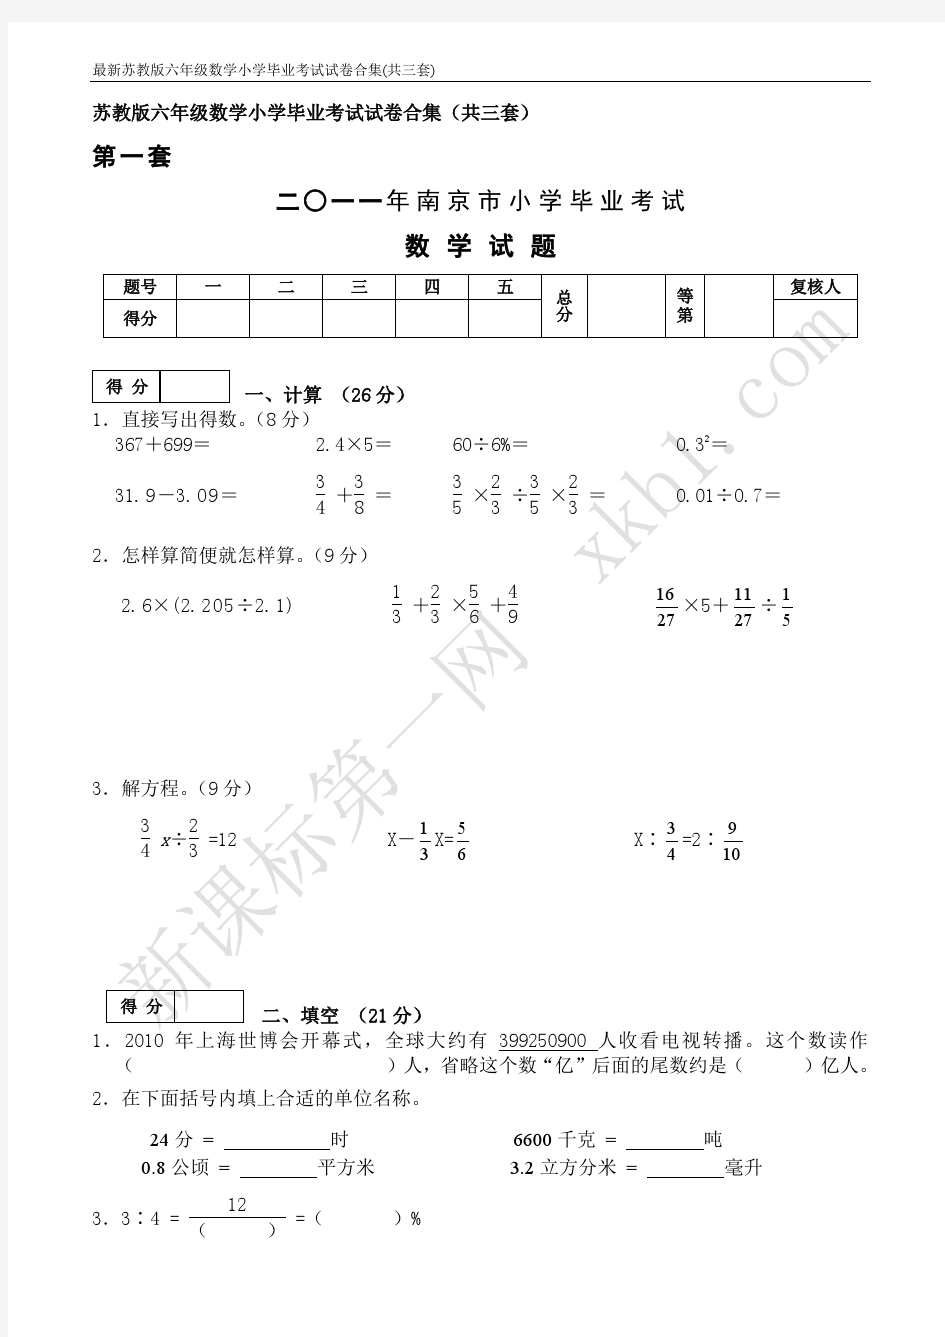 苏教版六年级数学小学毕业考试试卷合集(共三套)